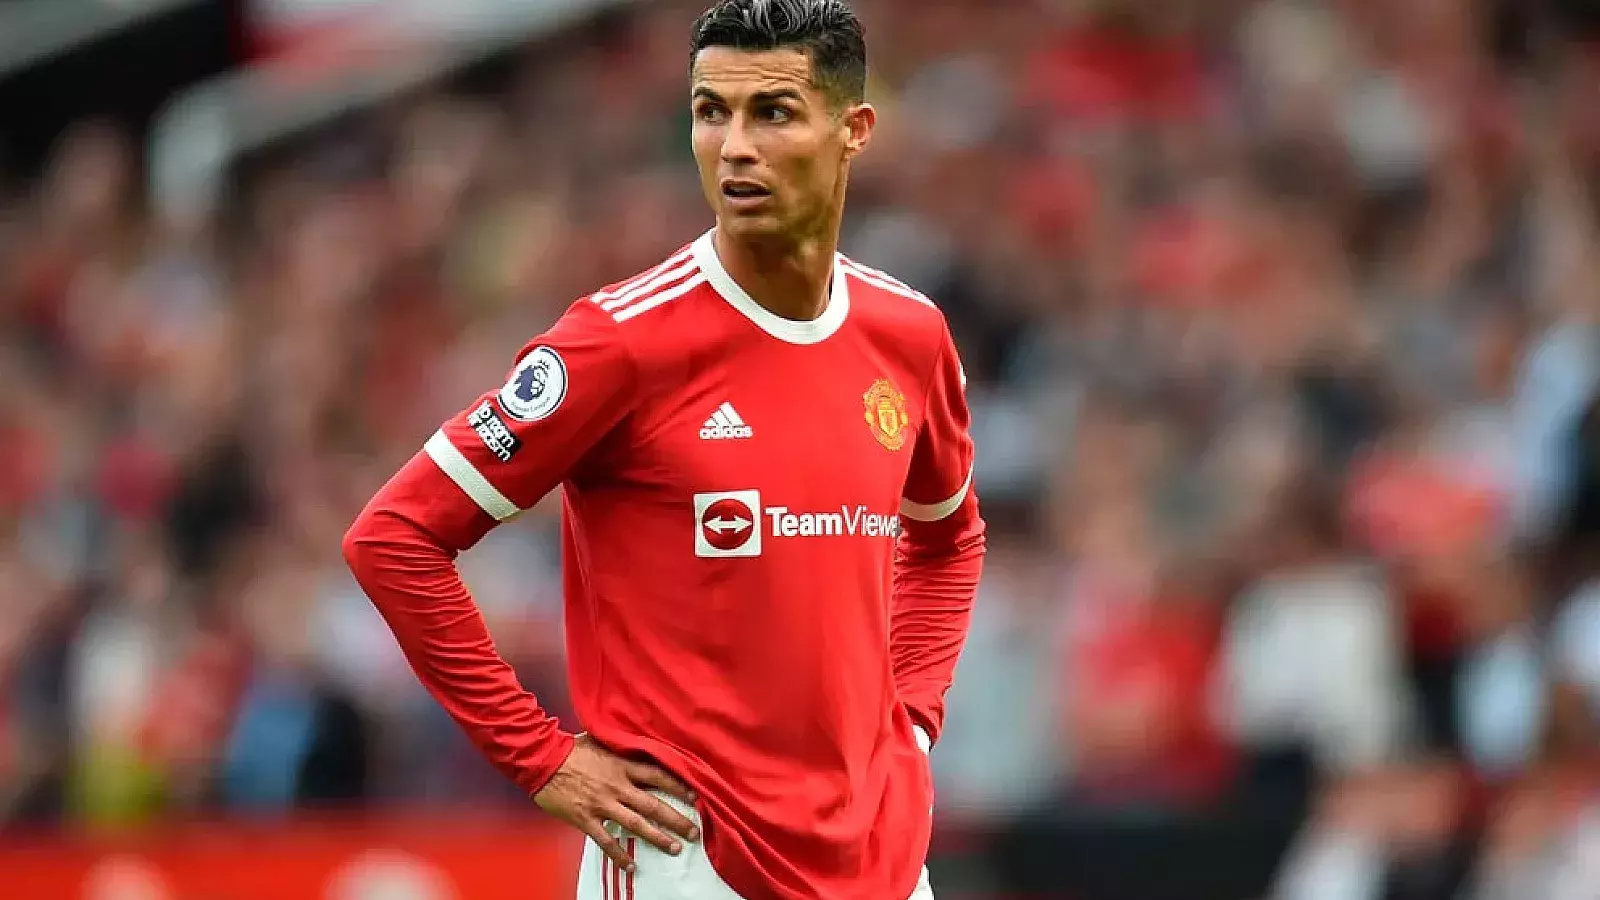 Manchester United emprende acciones legales contra Cristiano Ronaldo